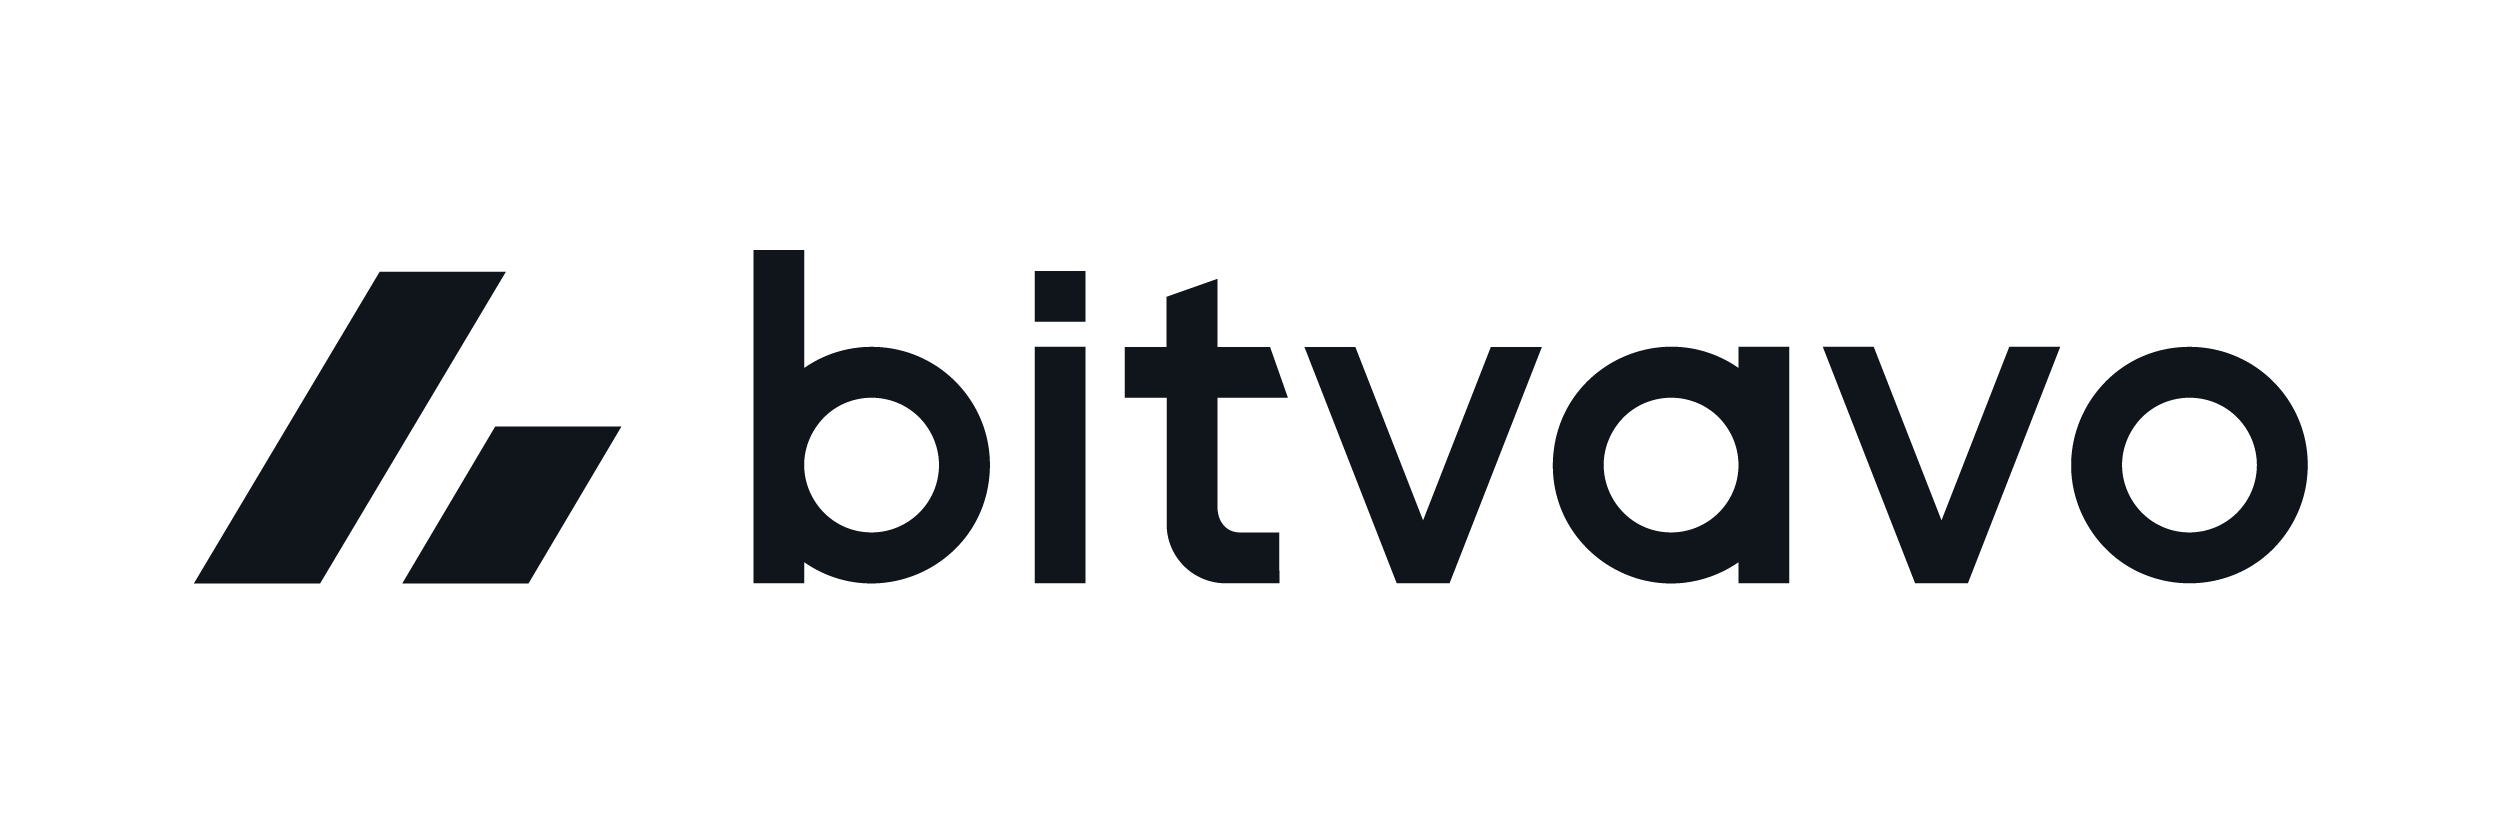 Hoe werkt Bitvavo? Uitleg voor beginners